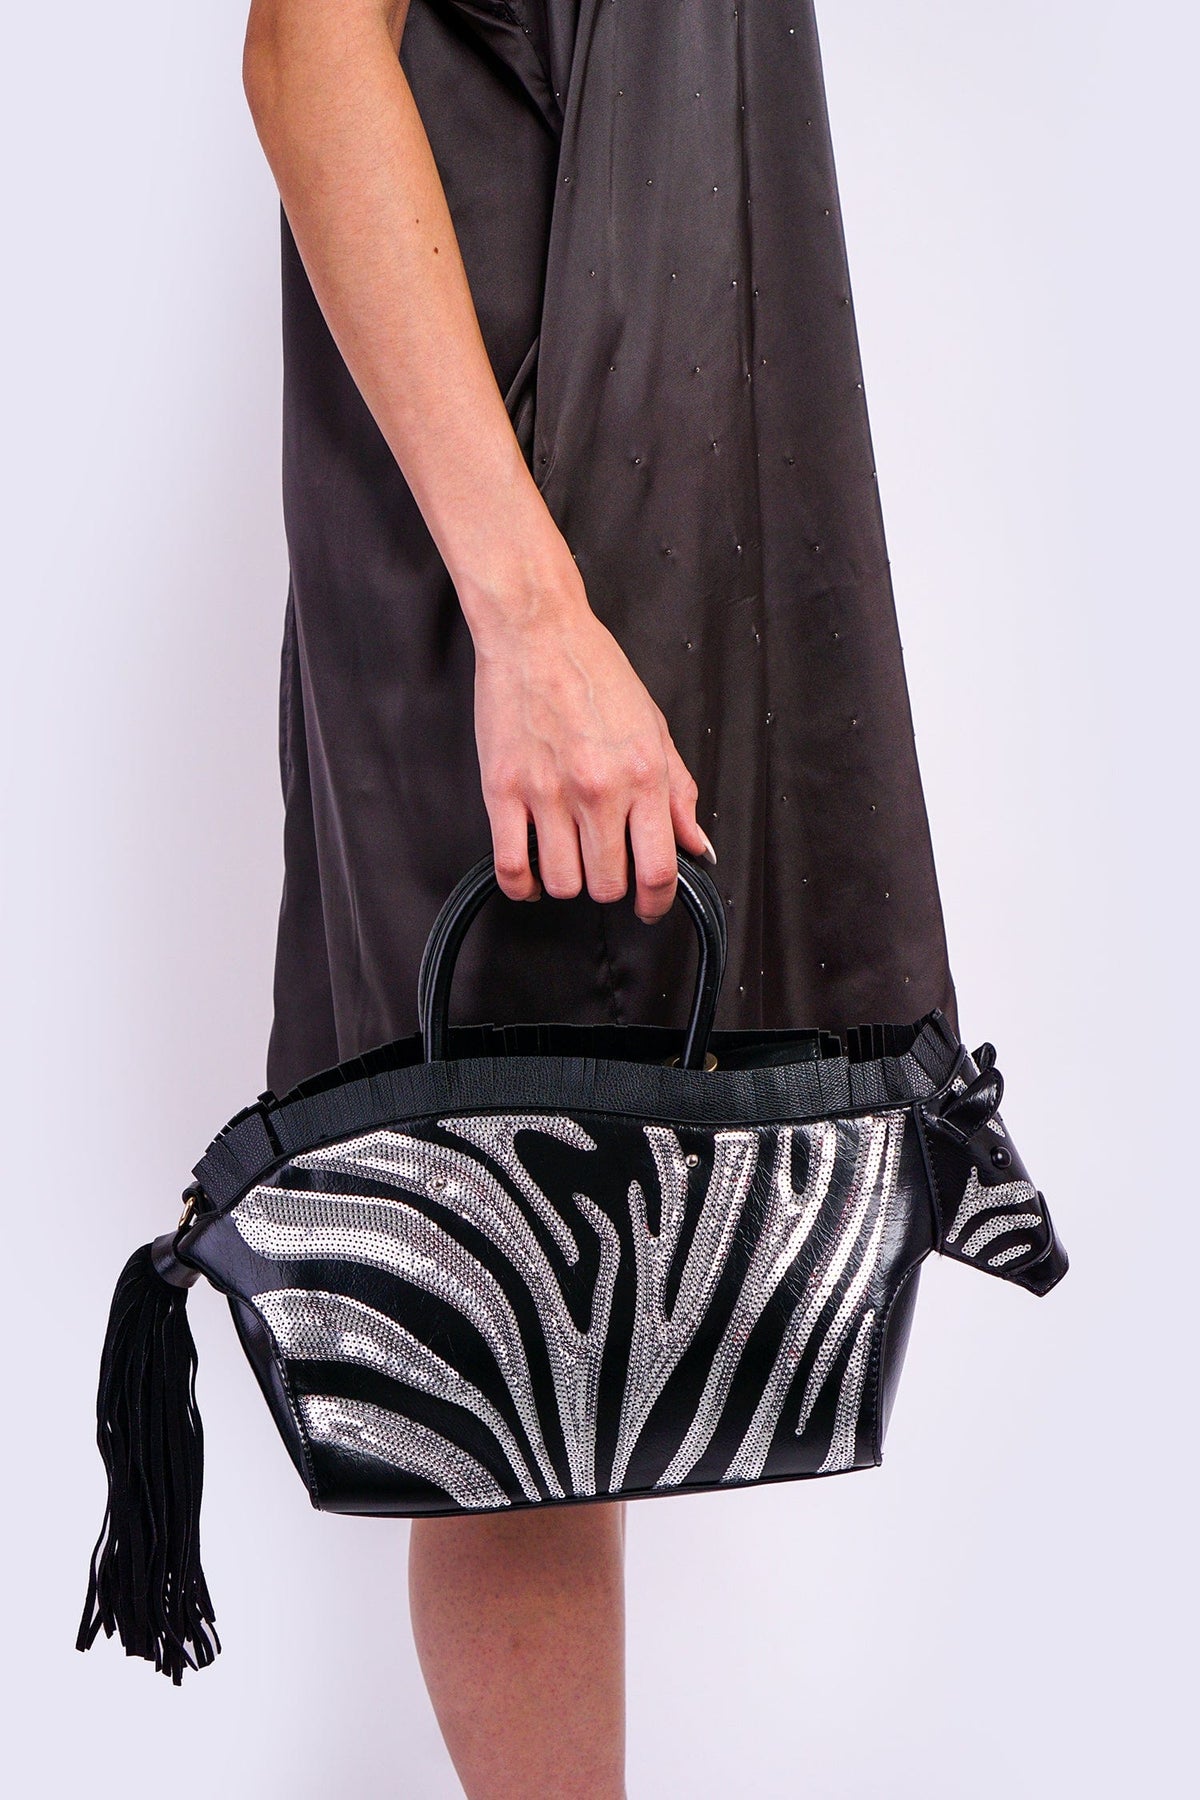 DCD HANDBAGS Black White Zebra Bag